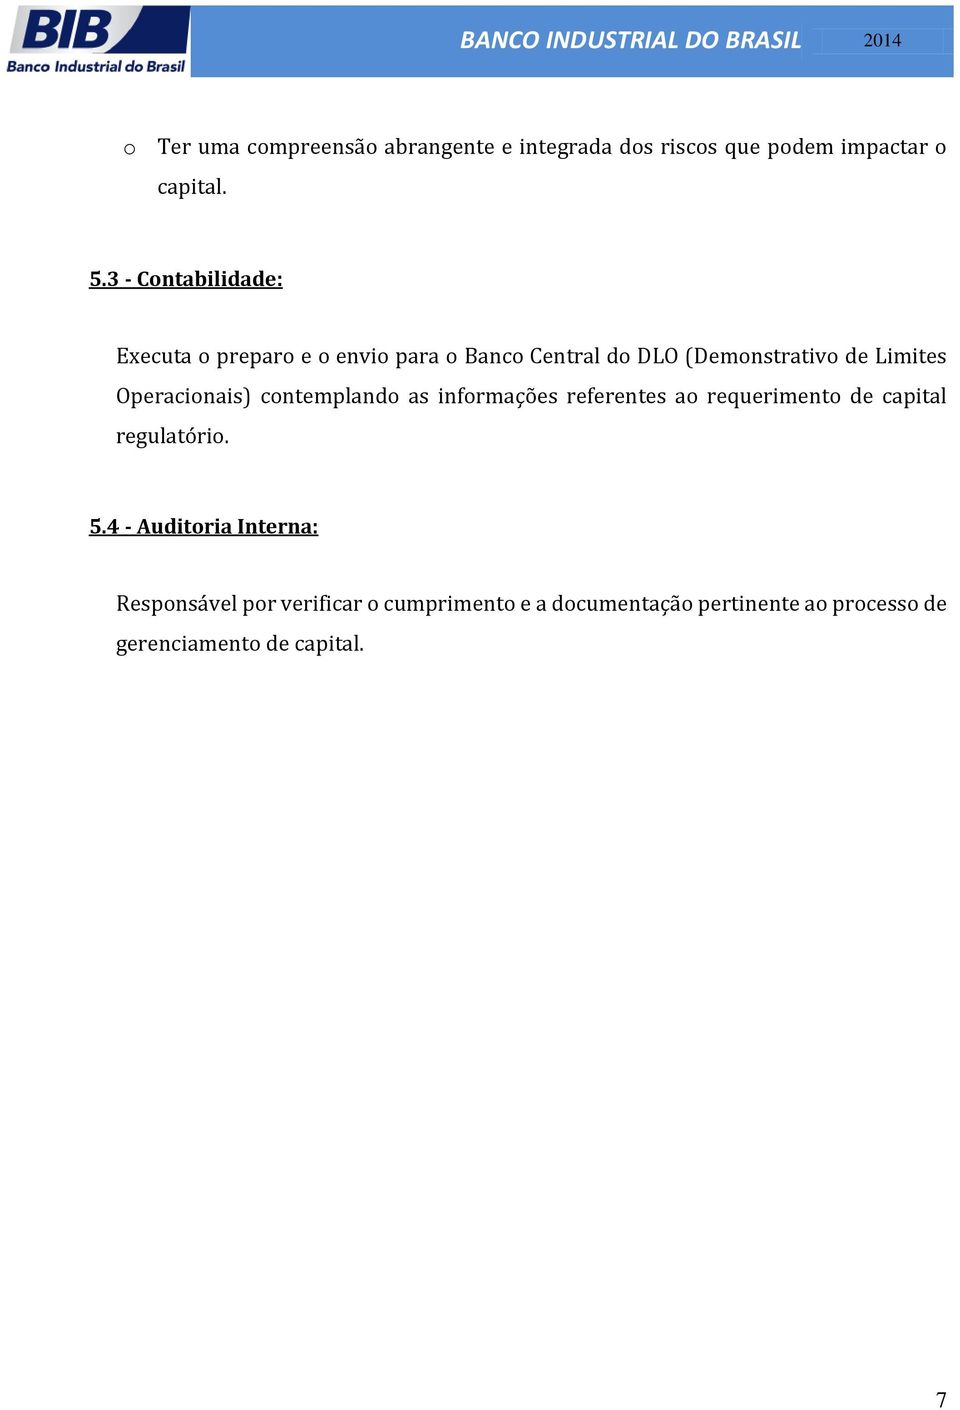 Operacinais) cntempland as infrmações referentes a requeriment de capital regulatóri. 5.